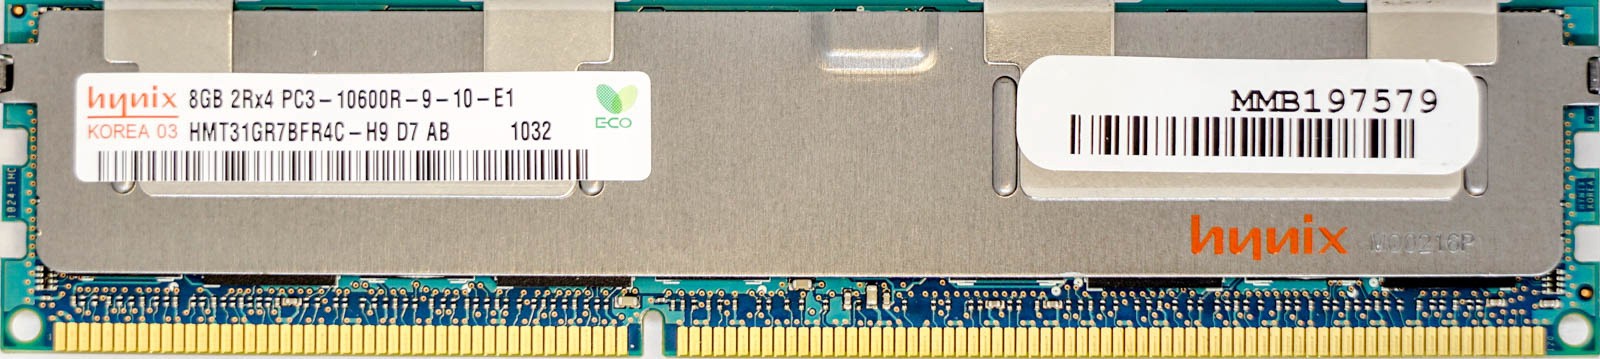 Hynix - 8GB PC3-10600R (DDR3-1333Mhz, 2RX4)